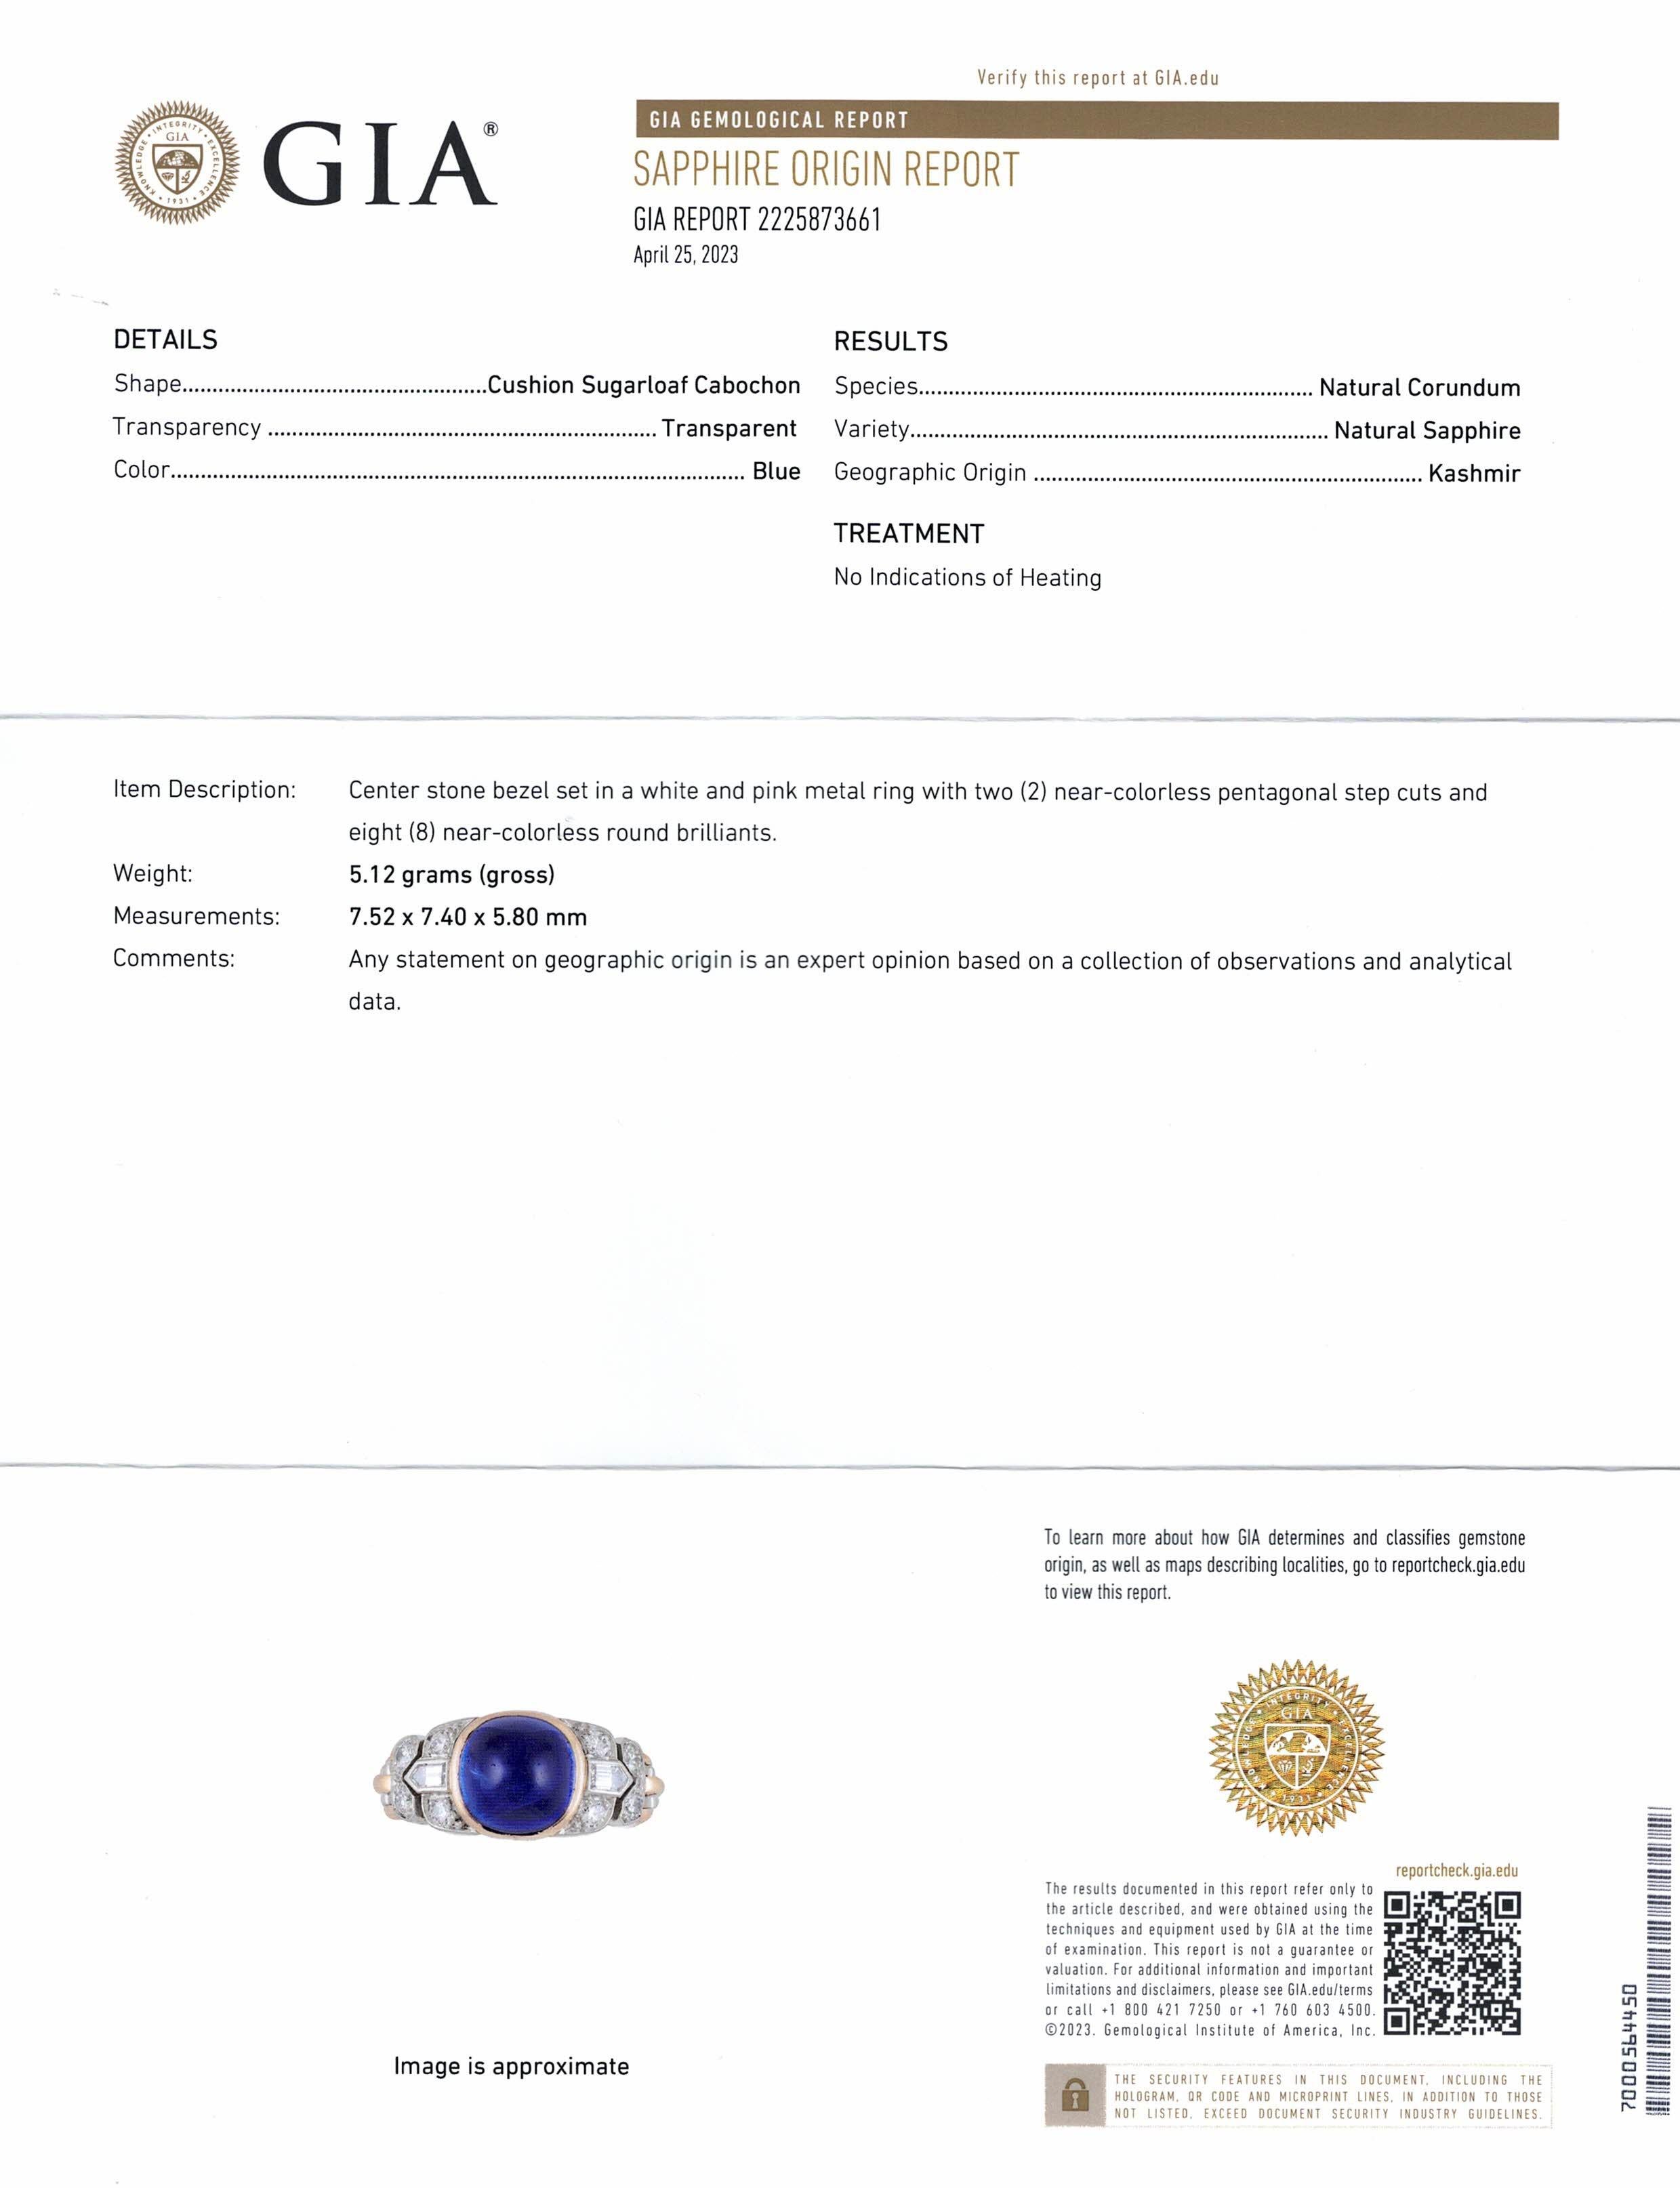 Antique Art Deco 18K Gold Platinum Kashmir Sapphire Diamond Flexible Ring - AGL For Sale 8